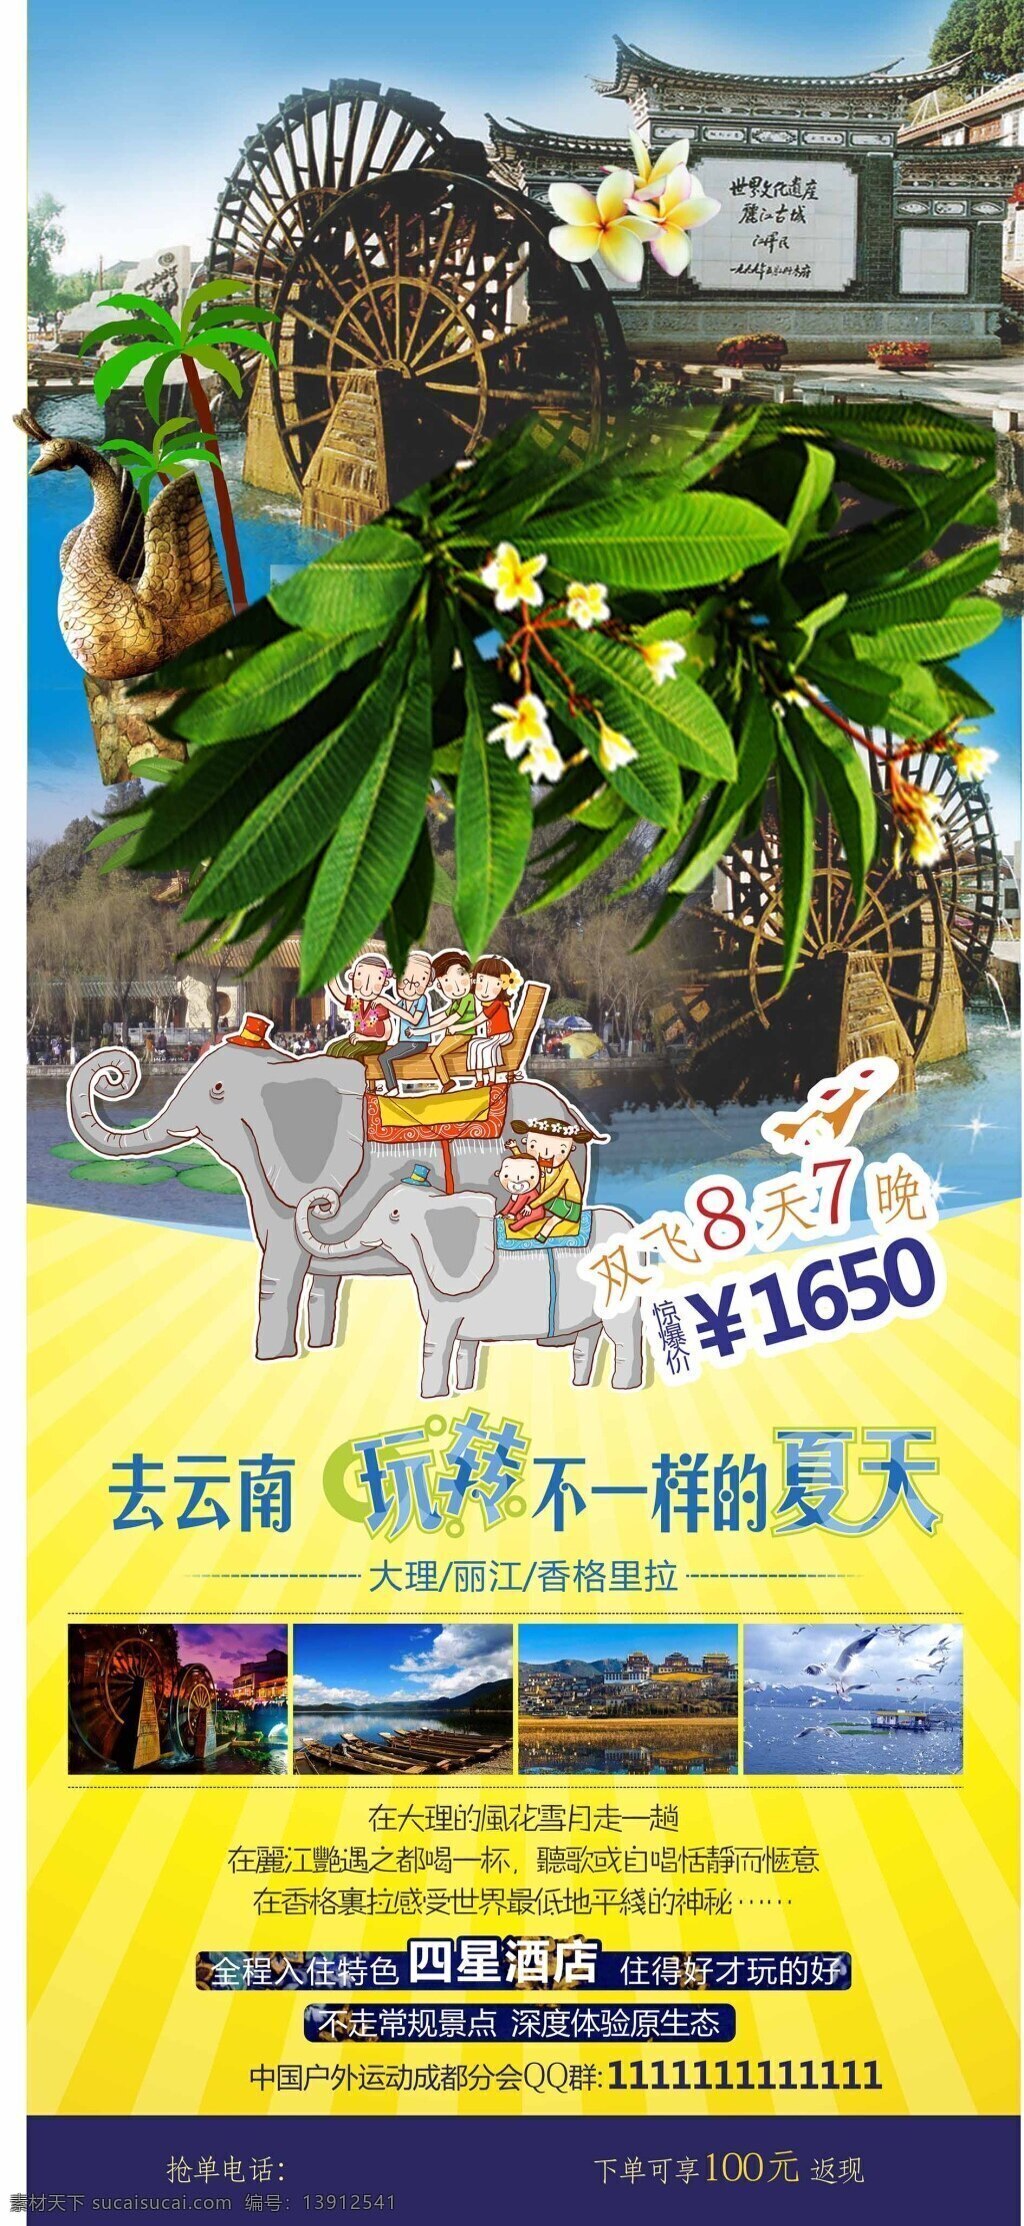 旅游海报设计 旅游 云南旅游海报 云南 风景 展架 创意展架 创意海报 黄色